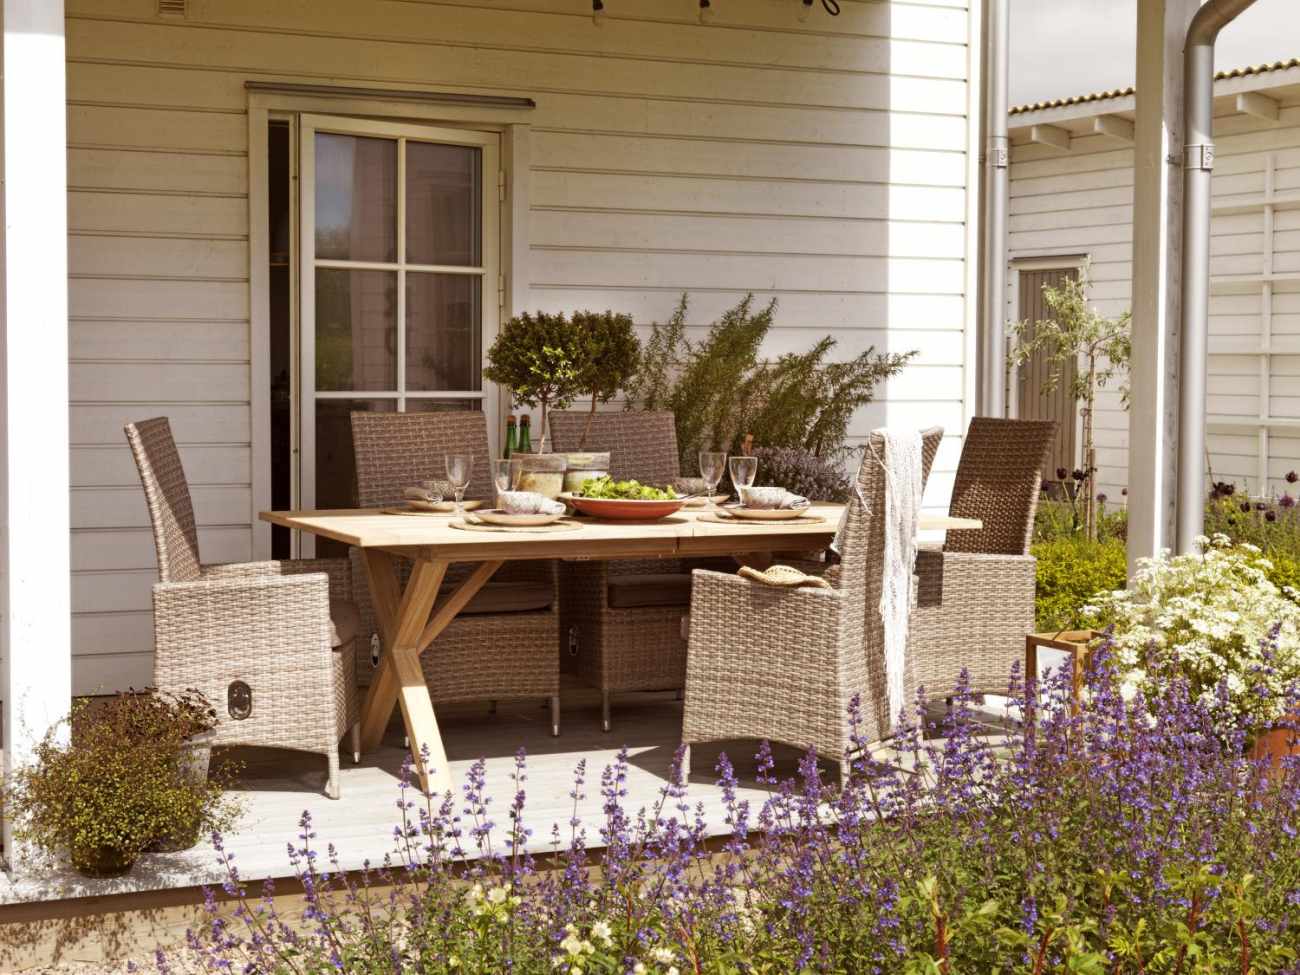 Der Gartenesstisch Brutus überzeugt mit seinem modernen Design. Gefertigt wurde die Tischplatte aus Akazienholz, welche einen natürlichen Farbton besitzt. Das Gestell ist aus Akazienholz und hat eine natürliche Farbe. Der Tisch besitzt eine Länge von 220 